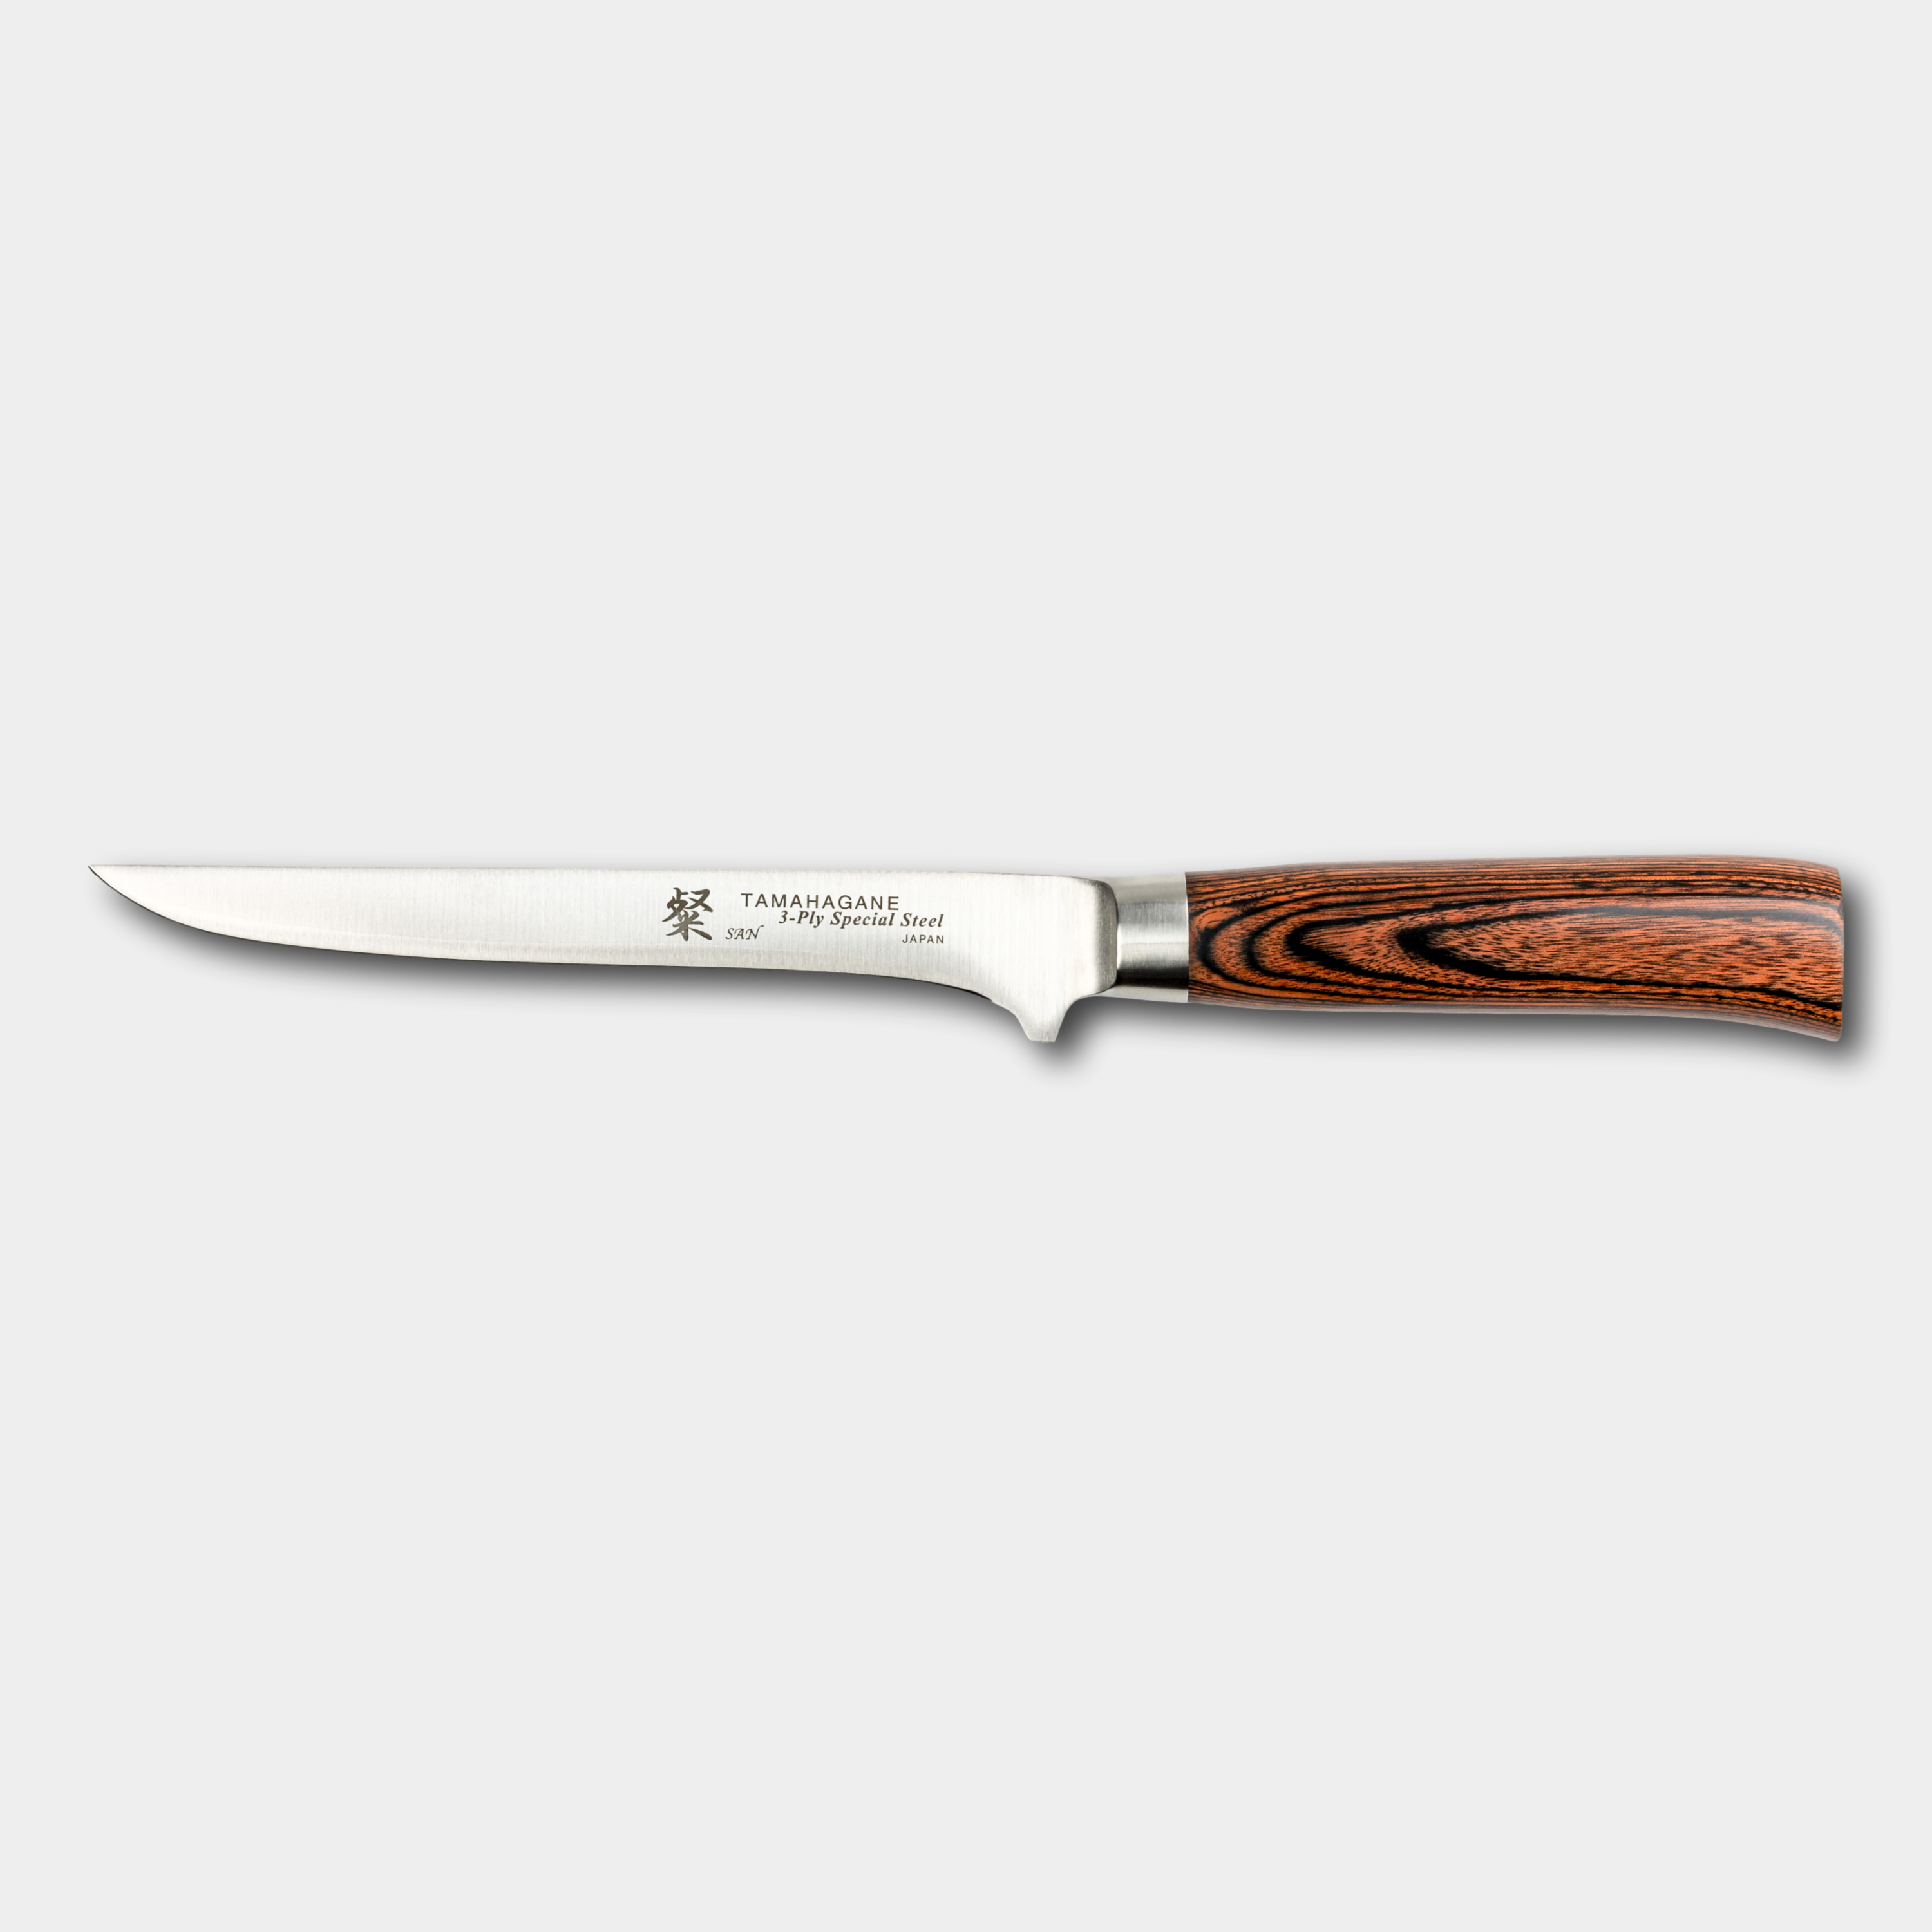 Tamahagane San 16cm Boning Knife